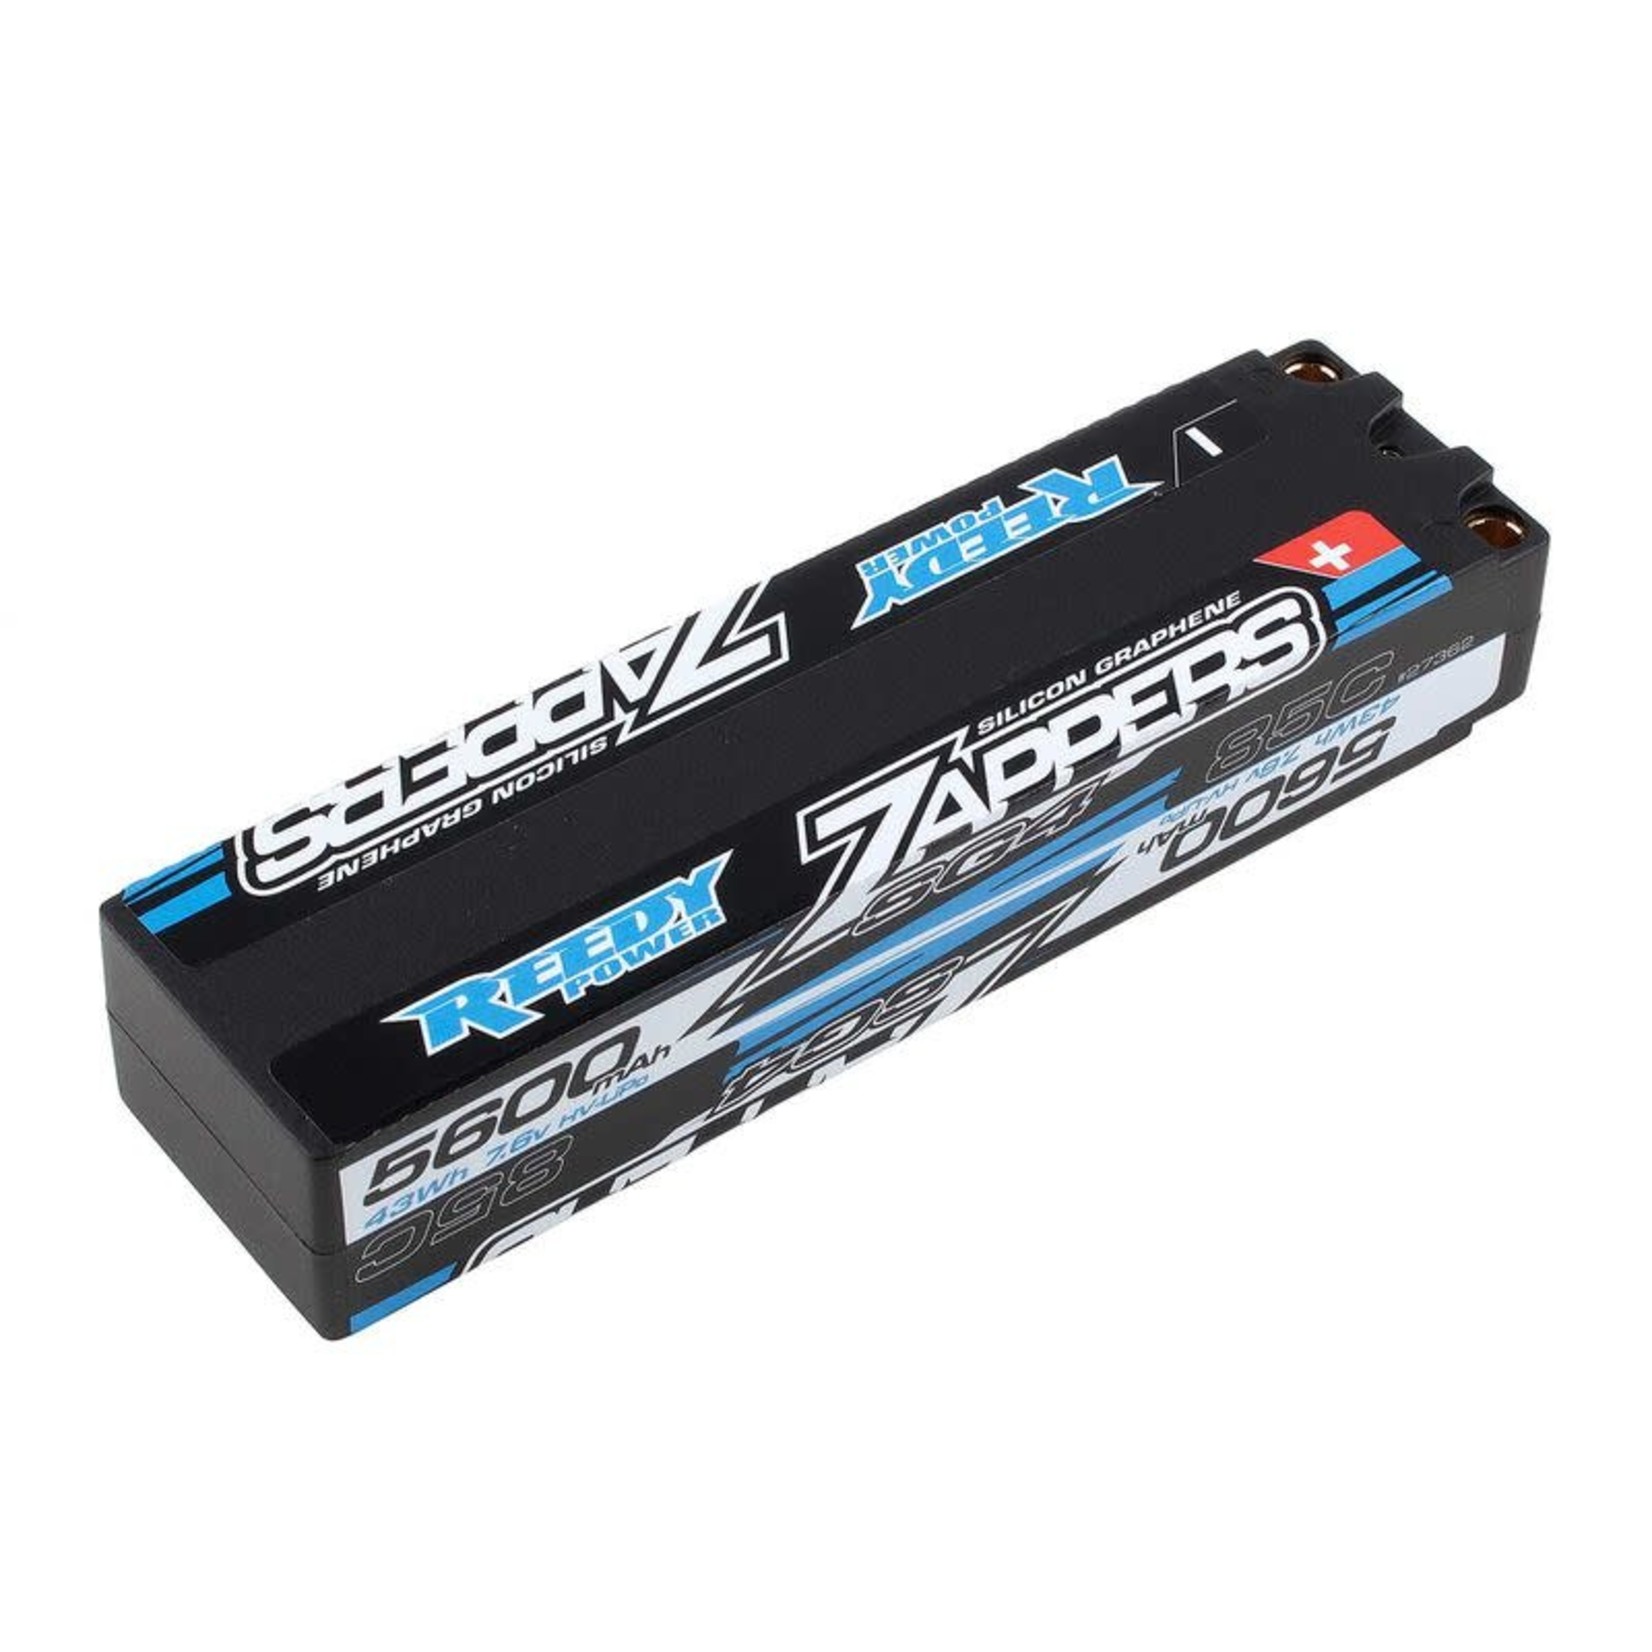 TEAM ASSOCIATED 7.6V 5600mAh 2S 85C Zappers SG4 Slim Stick HV-LiPo Battery